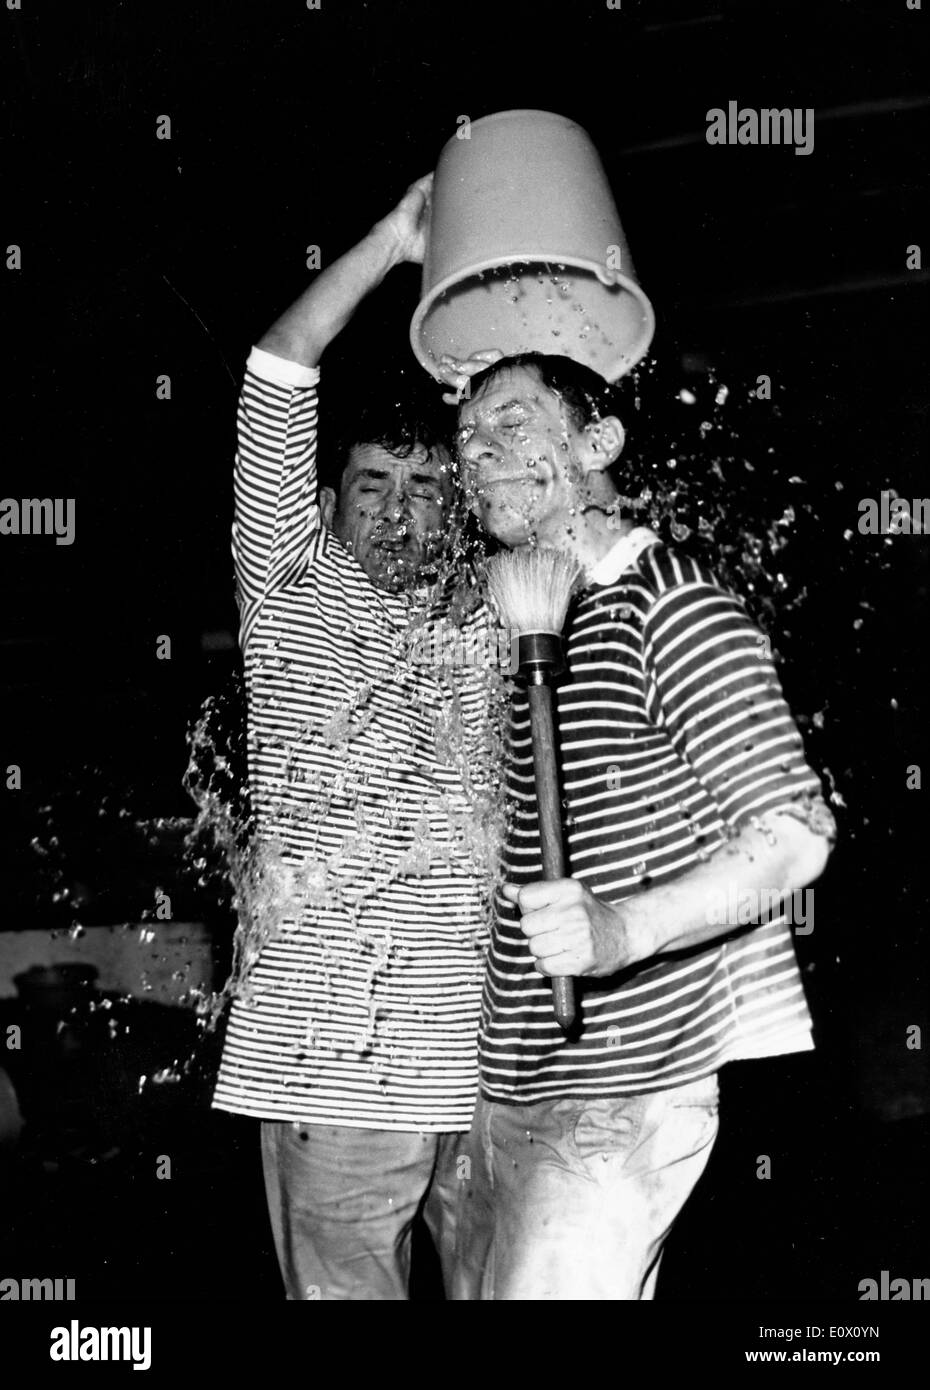 Maurice Baquet dumps Wasser auf Max Bills Kopf im Rahmen einer gala Stockfoto